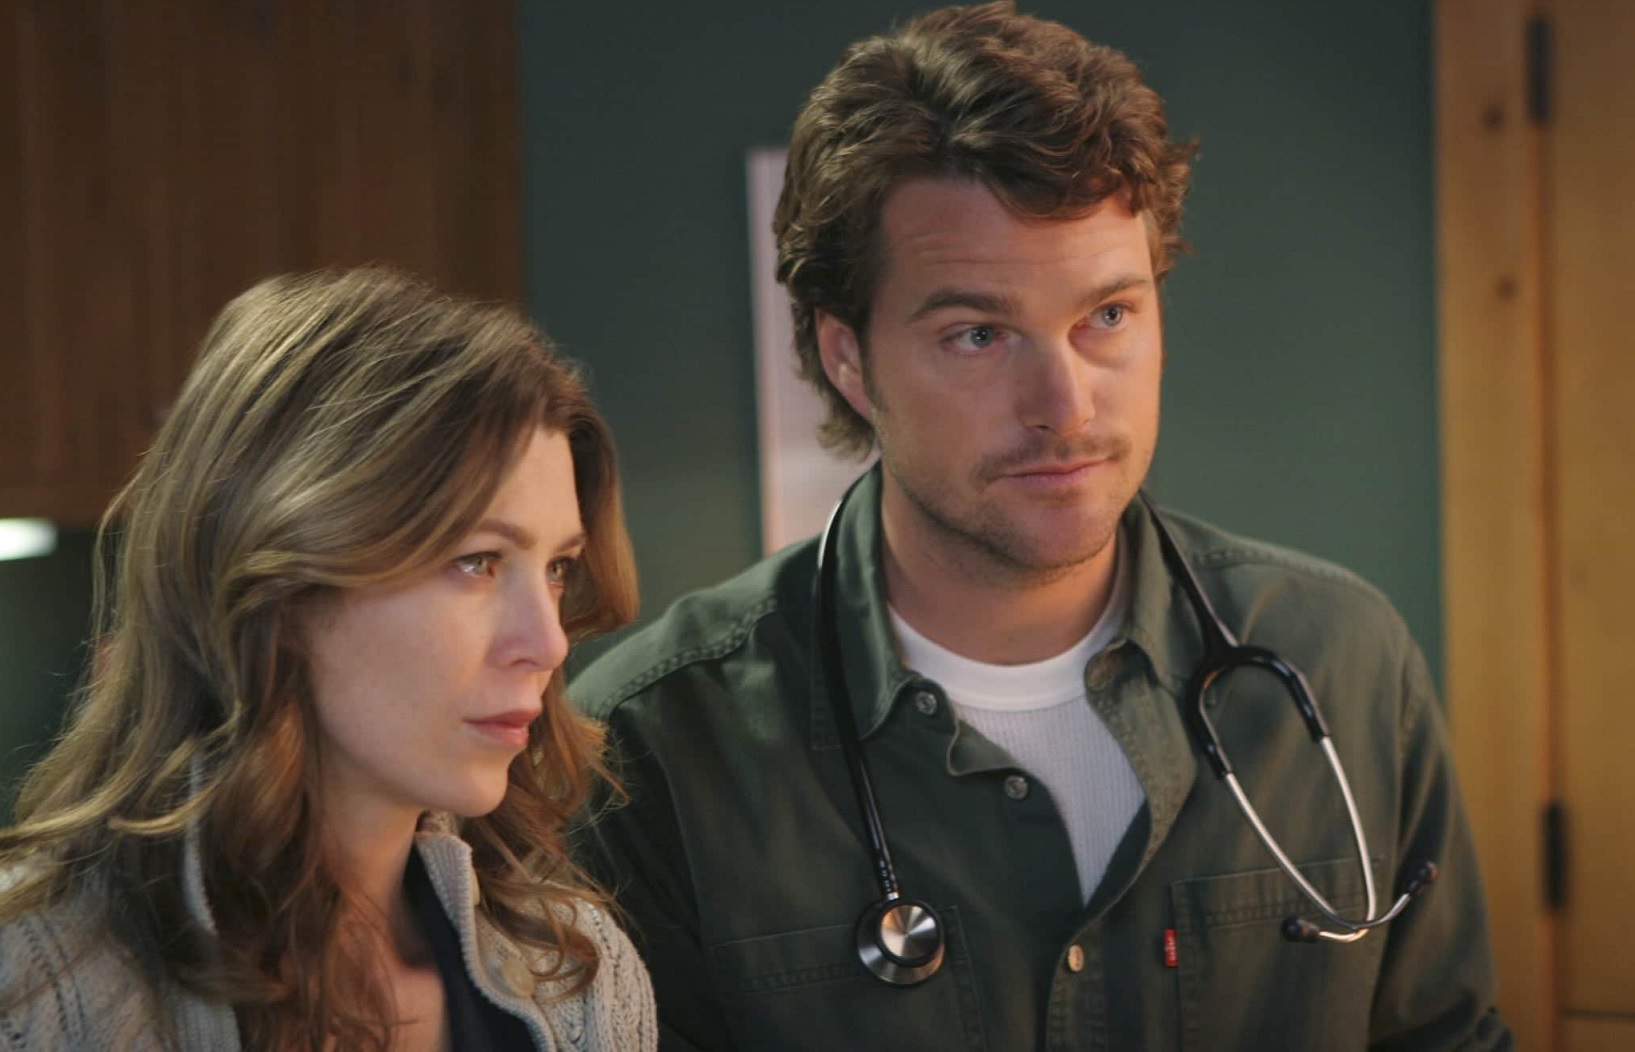 Quiz - Duvidamos que você se lembre se Meredith Grey já ficou ou não com estes personagens em Grey's Anatomy?